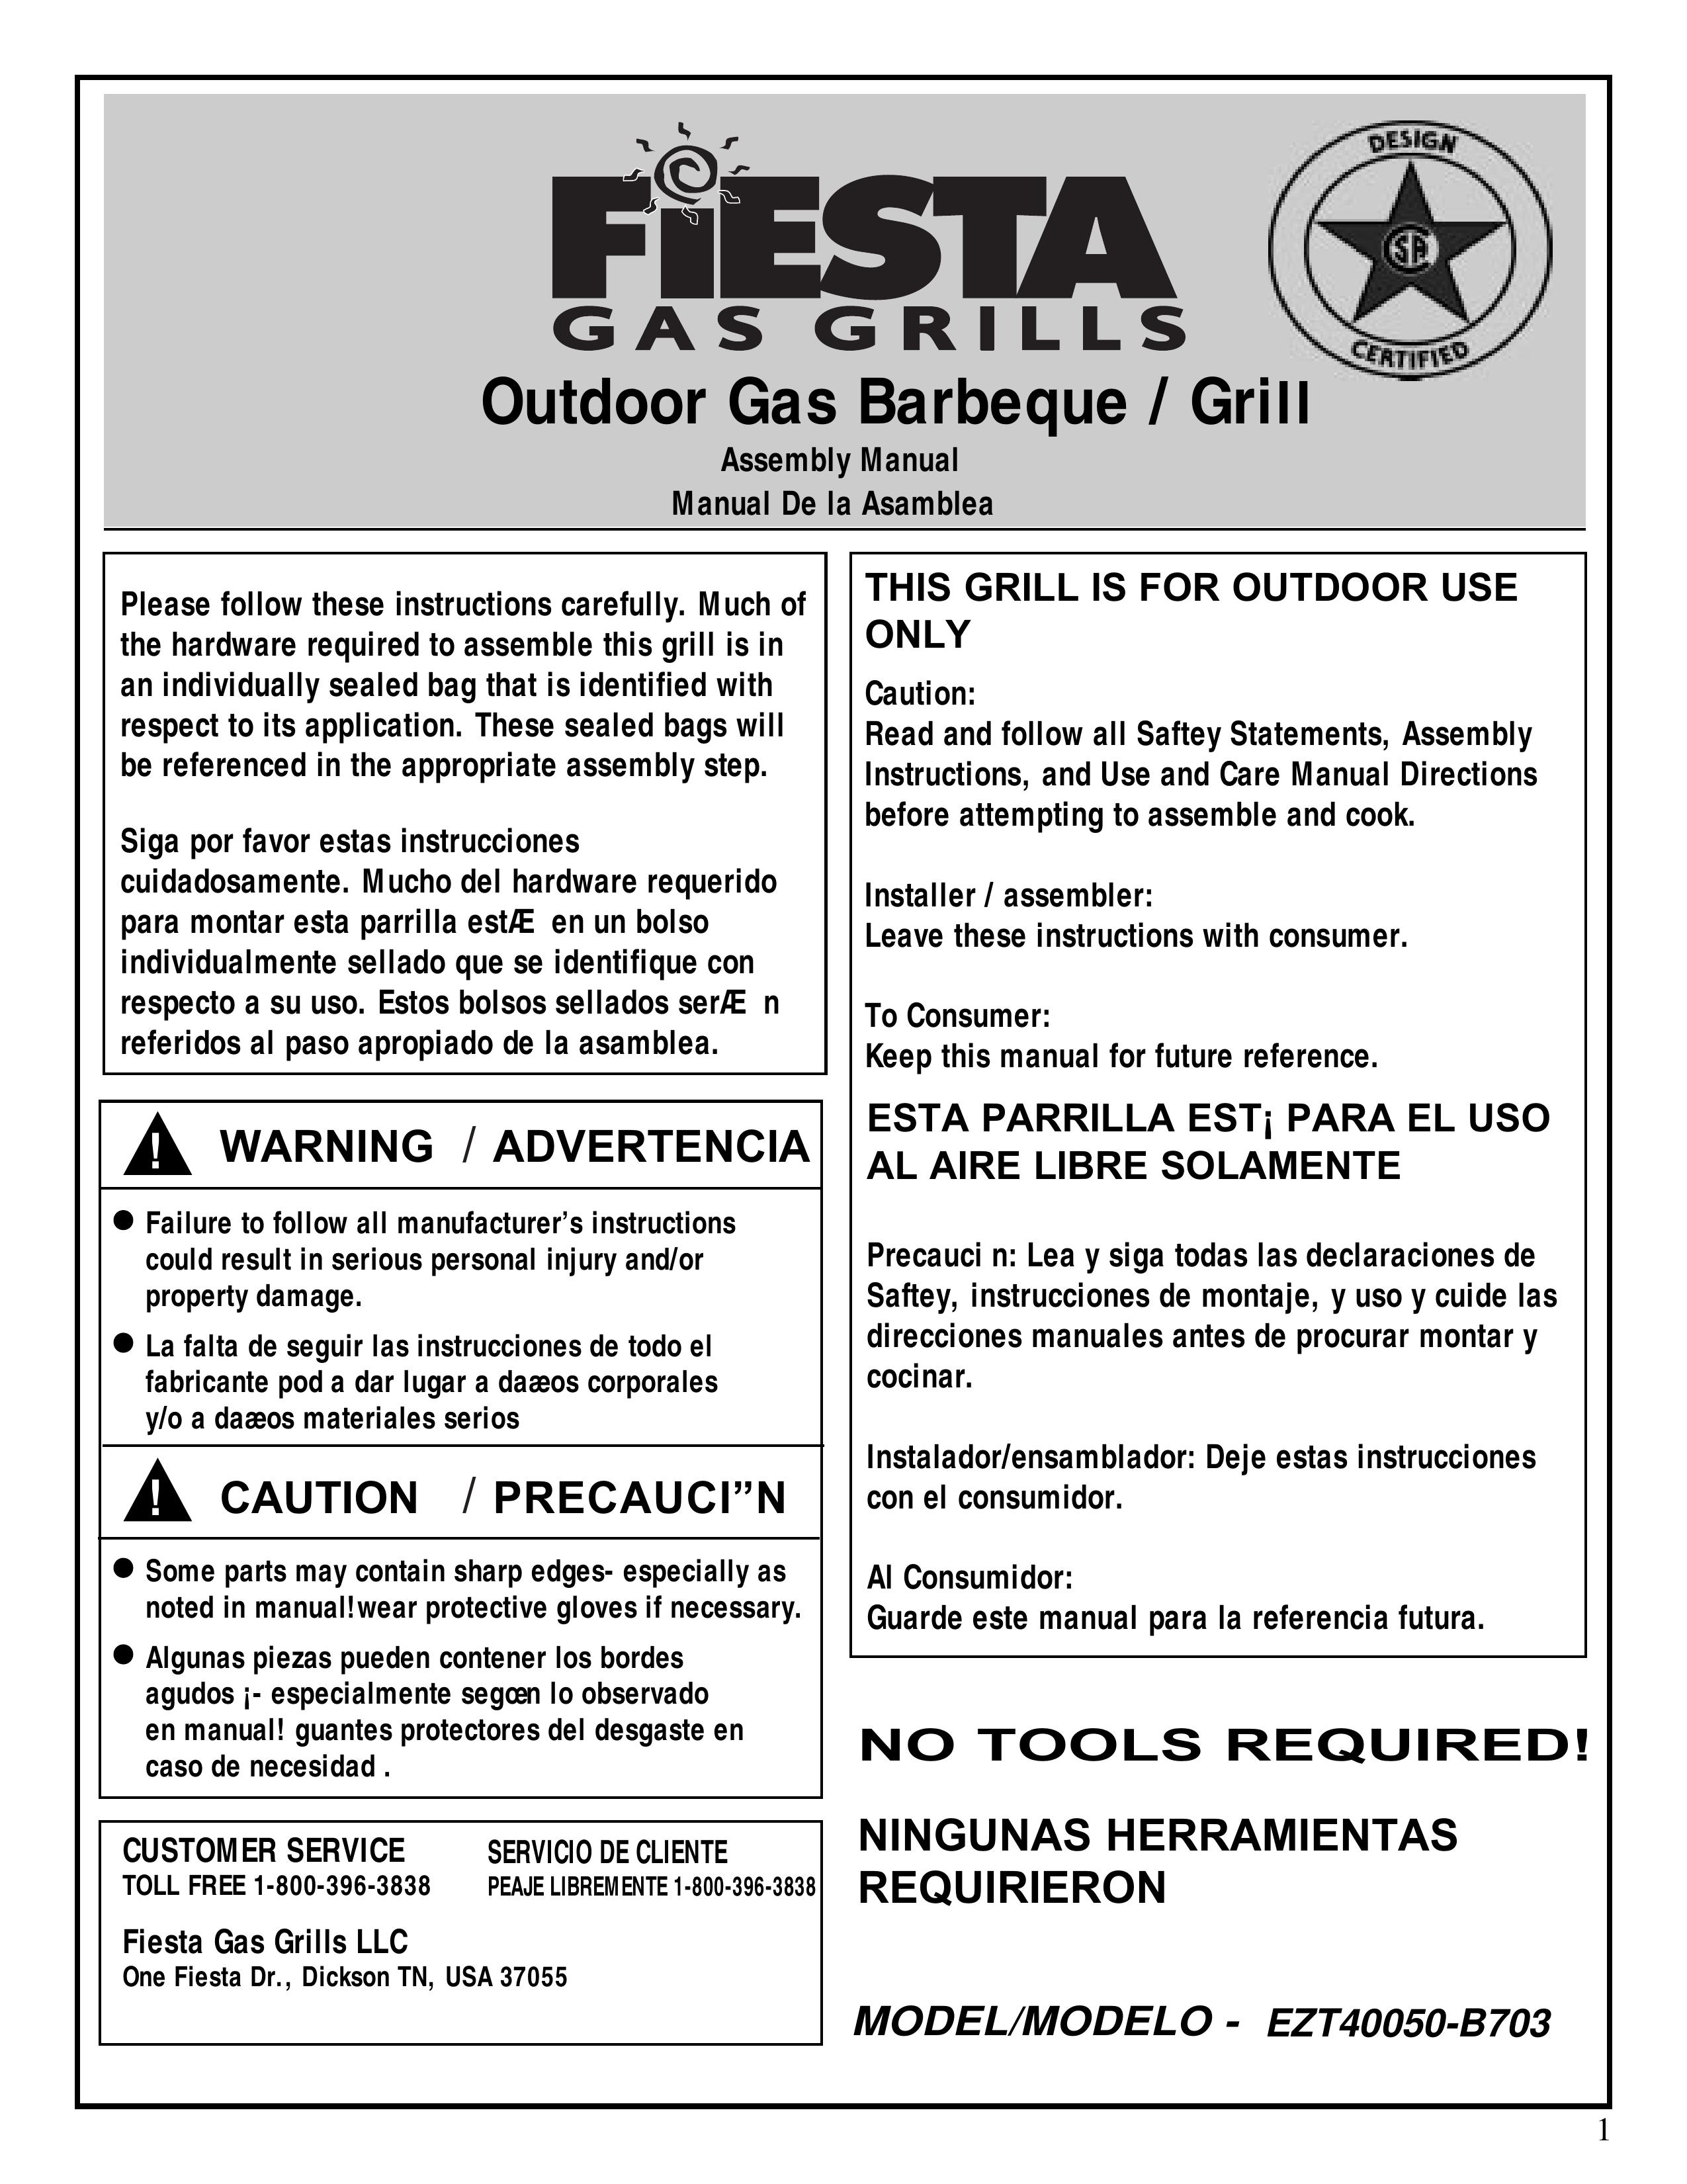 Fiesta EZT40050-B703 Gas Grill User Manual